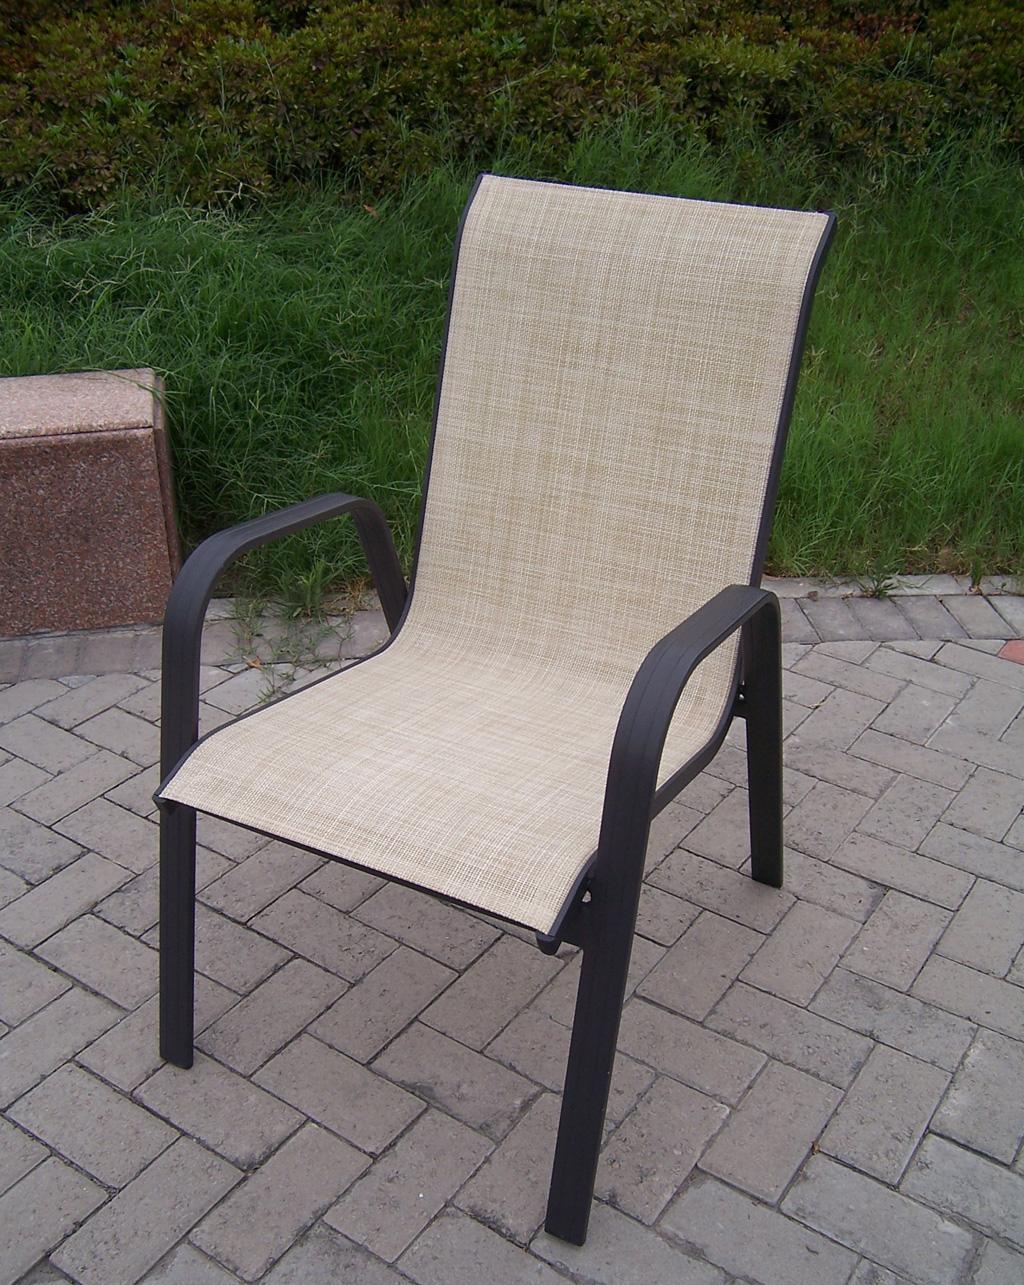 EcoG溢柯铝合金特斯林椅产品价格_图片_